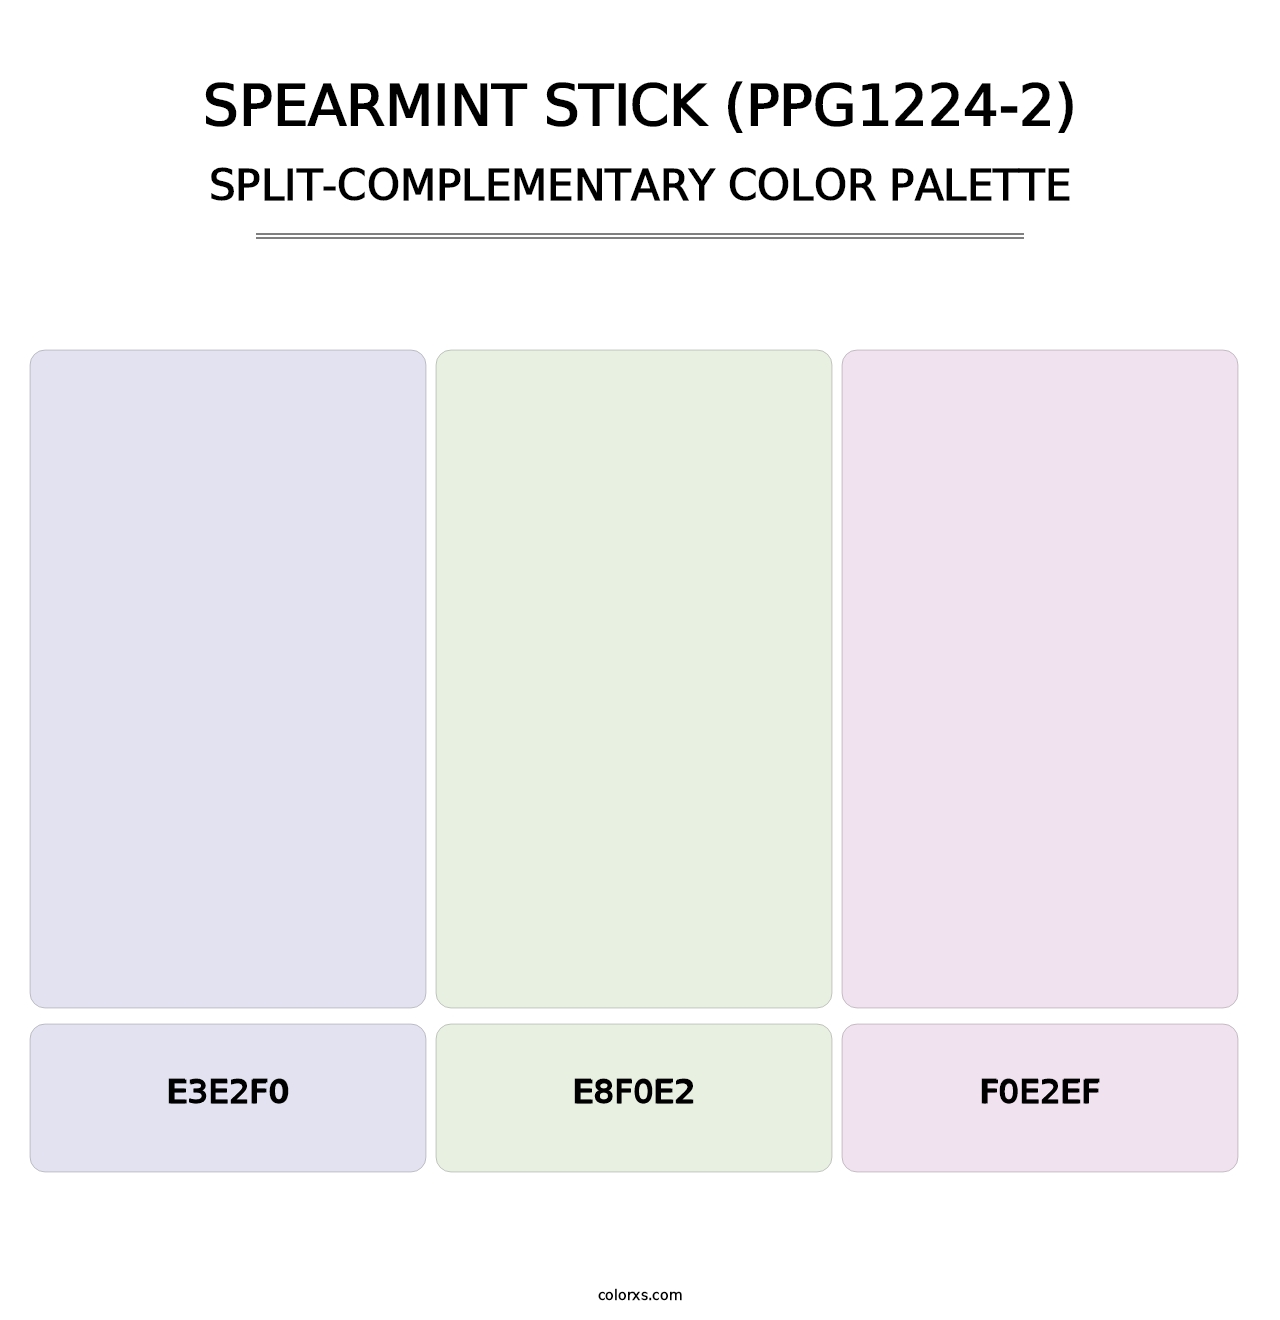 Spearmint Stick (PPG1224-2) - Split-Complementary Color Palette